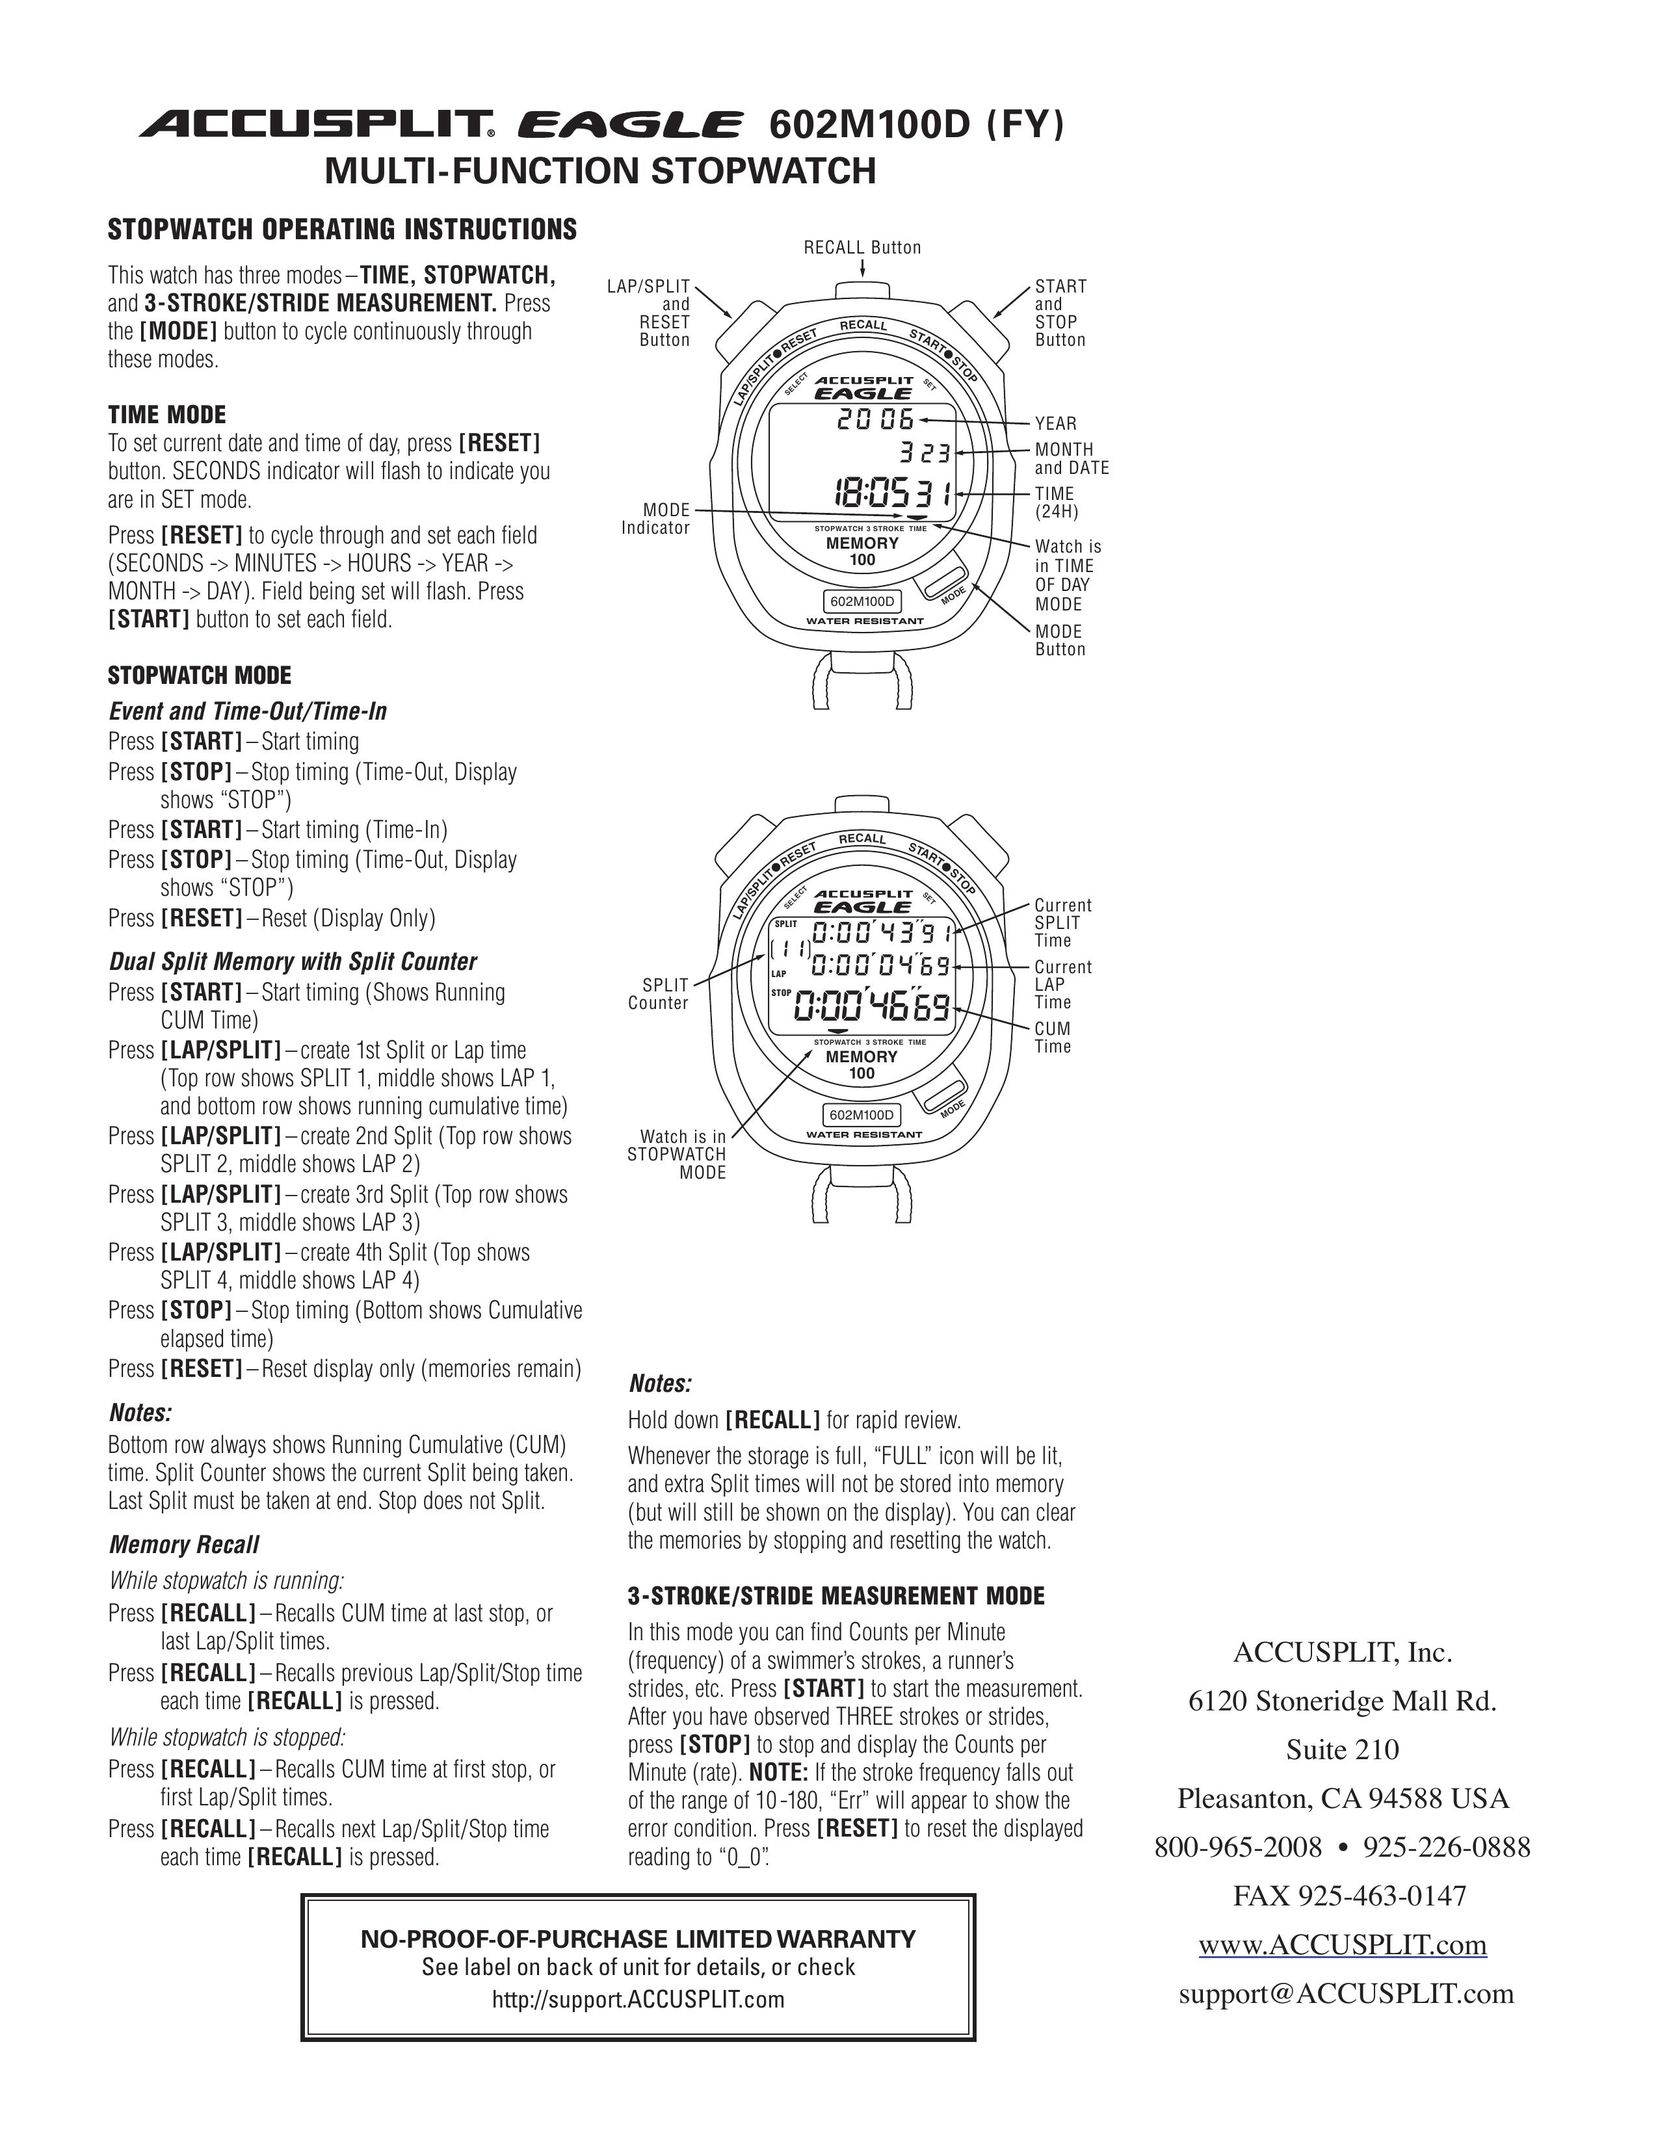 Accusplit 602M100D Heart Rate Monitor User Manual